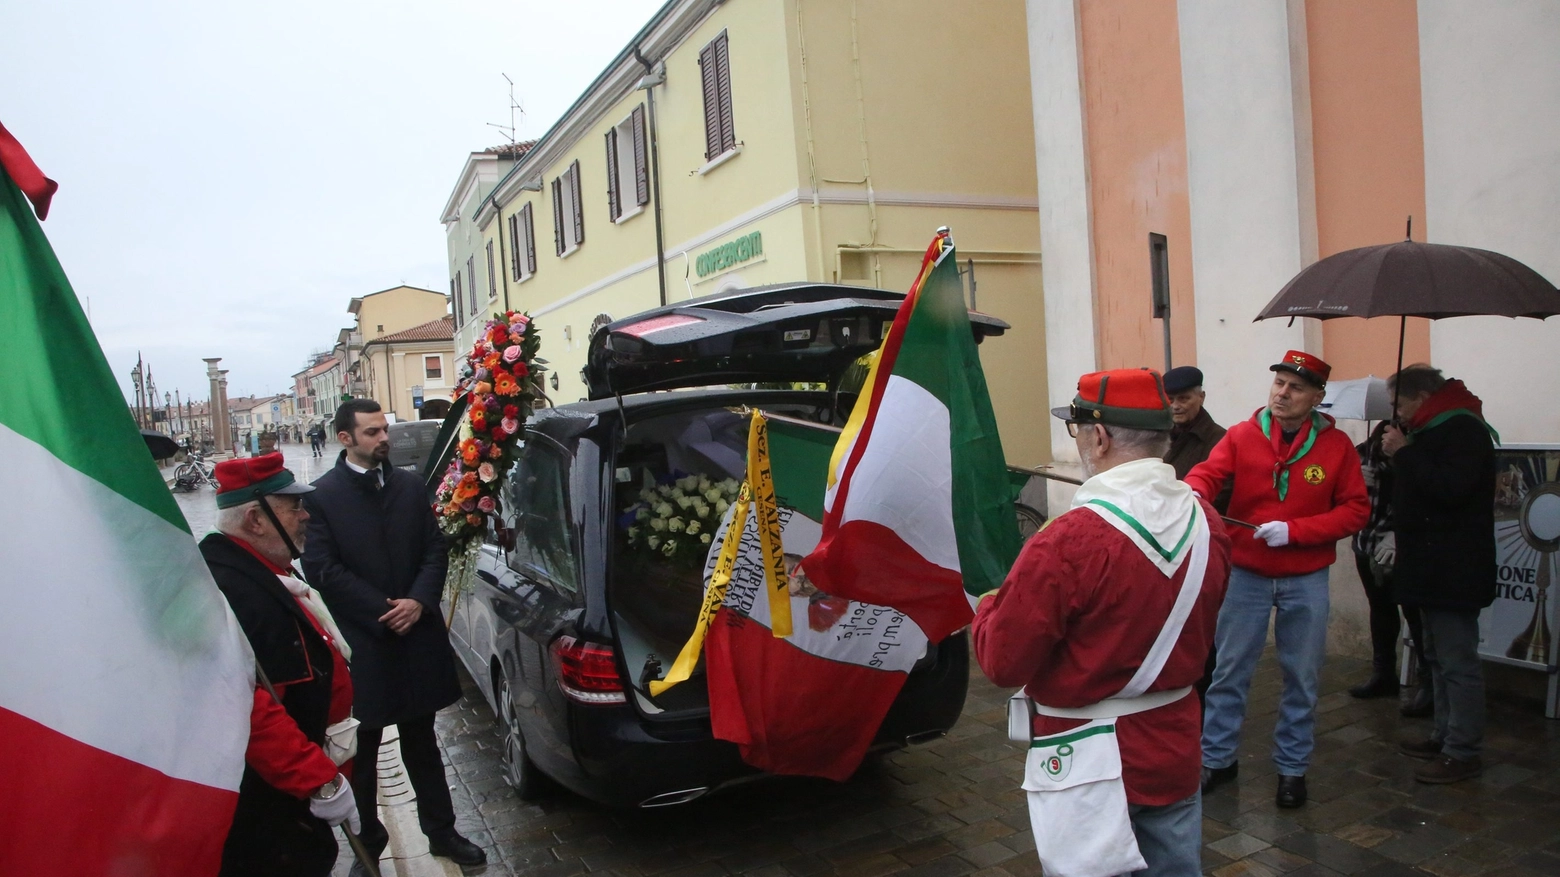 La commemorazione funebre di Azeglio Vicini (foto Ravaglia)